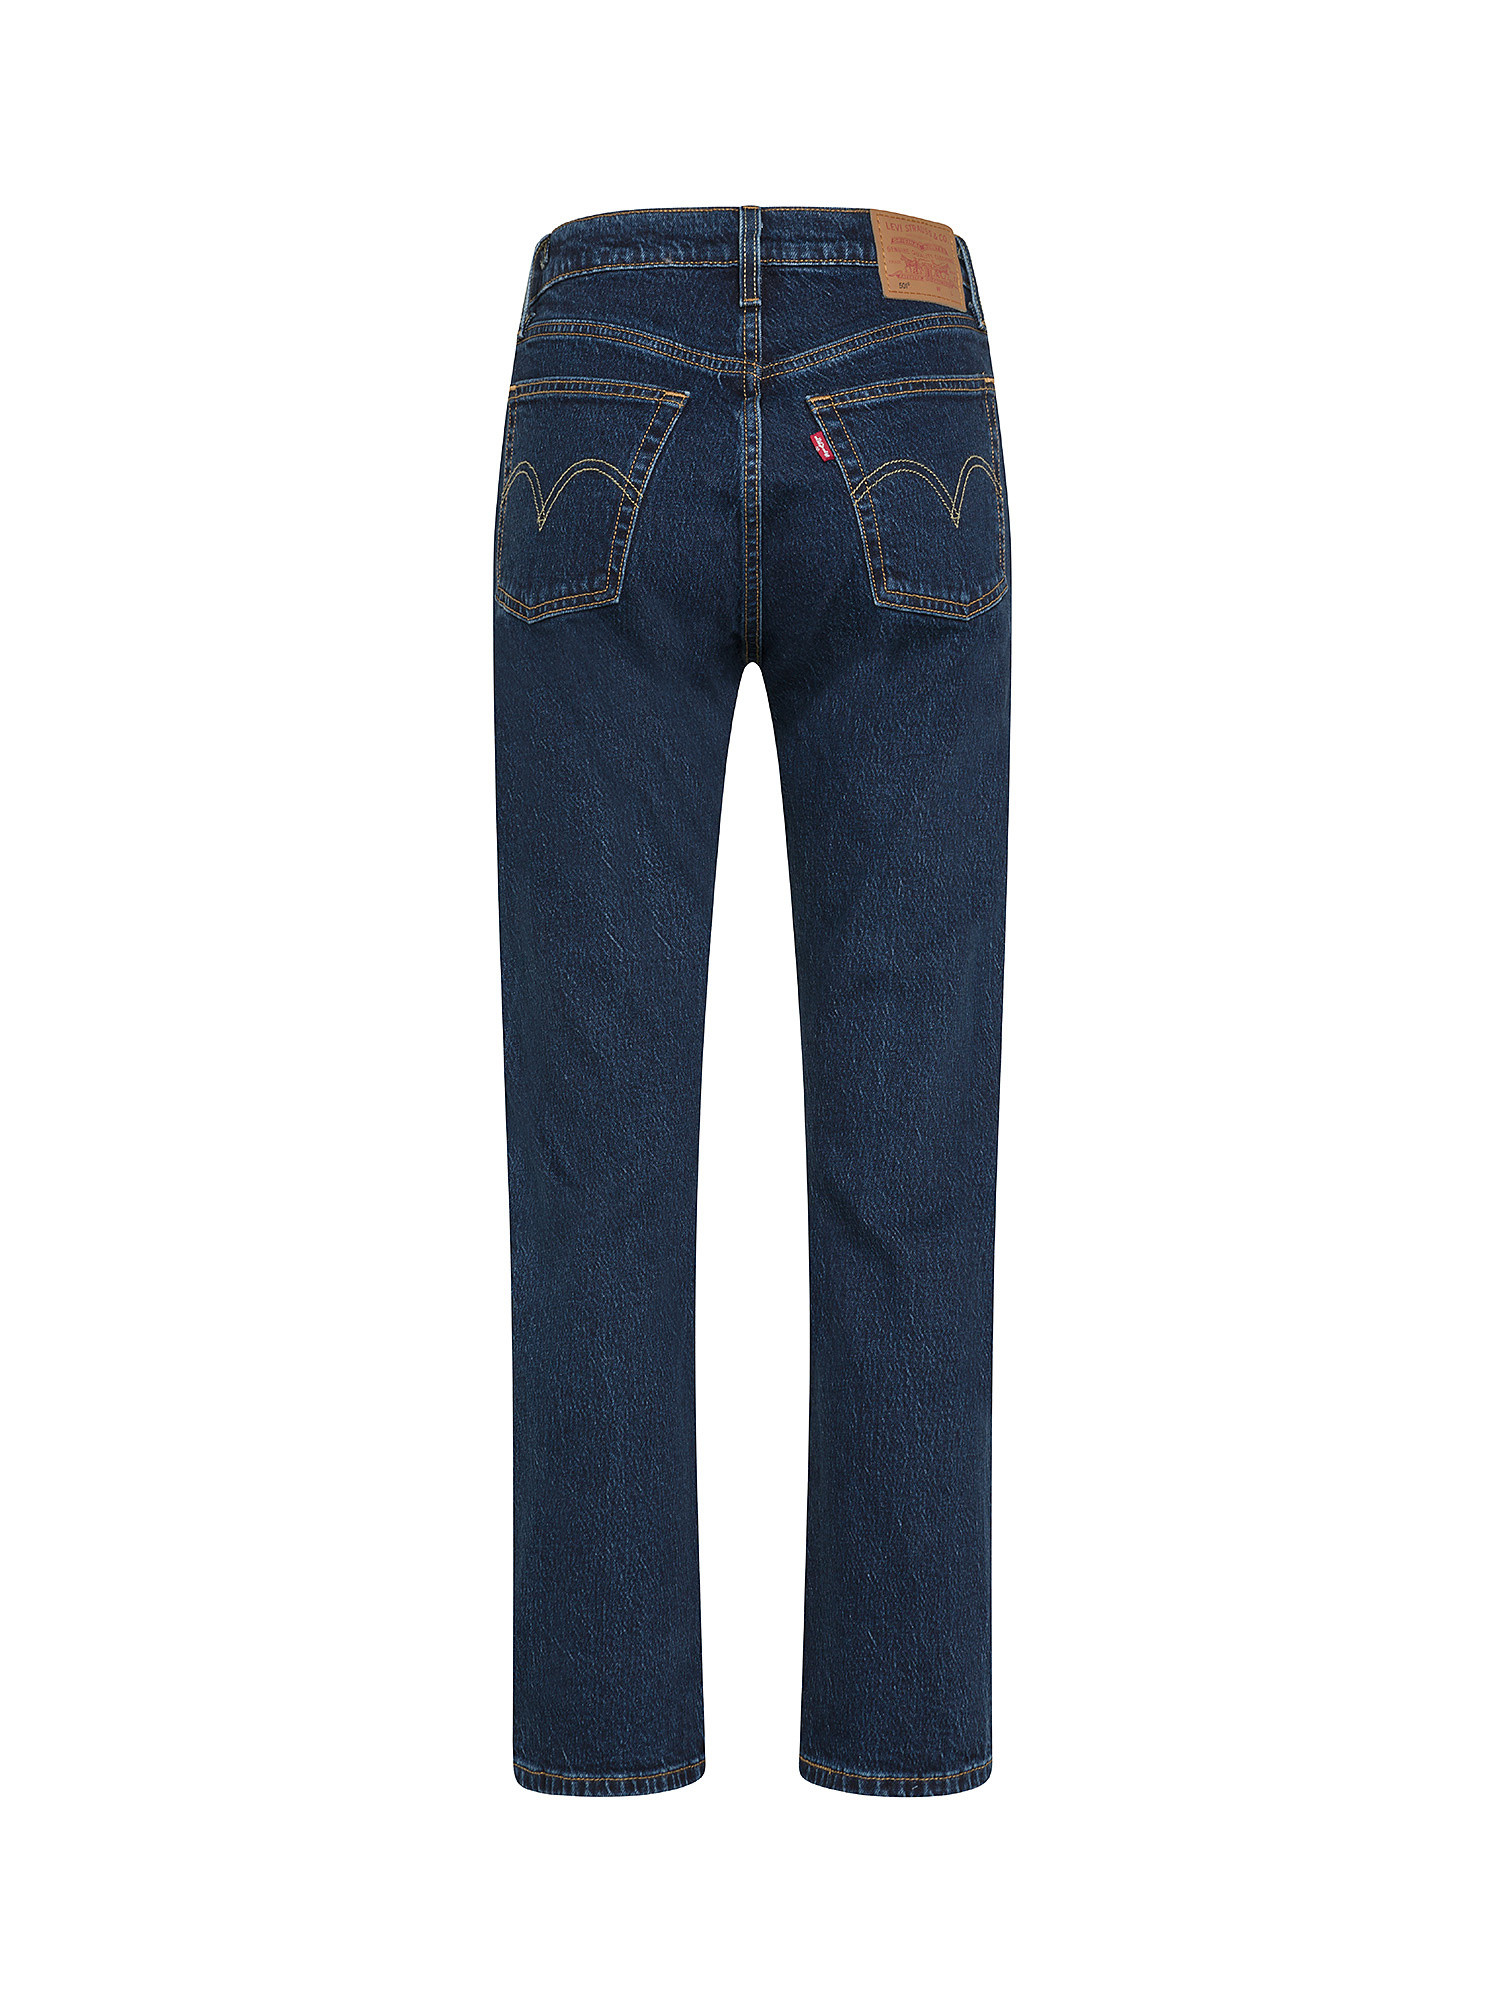 Levi's - jeans 501® original cropped, Denim, large image number 1